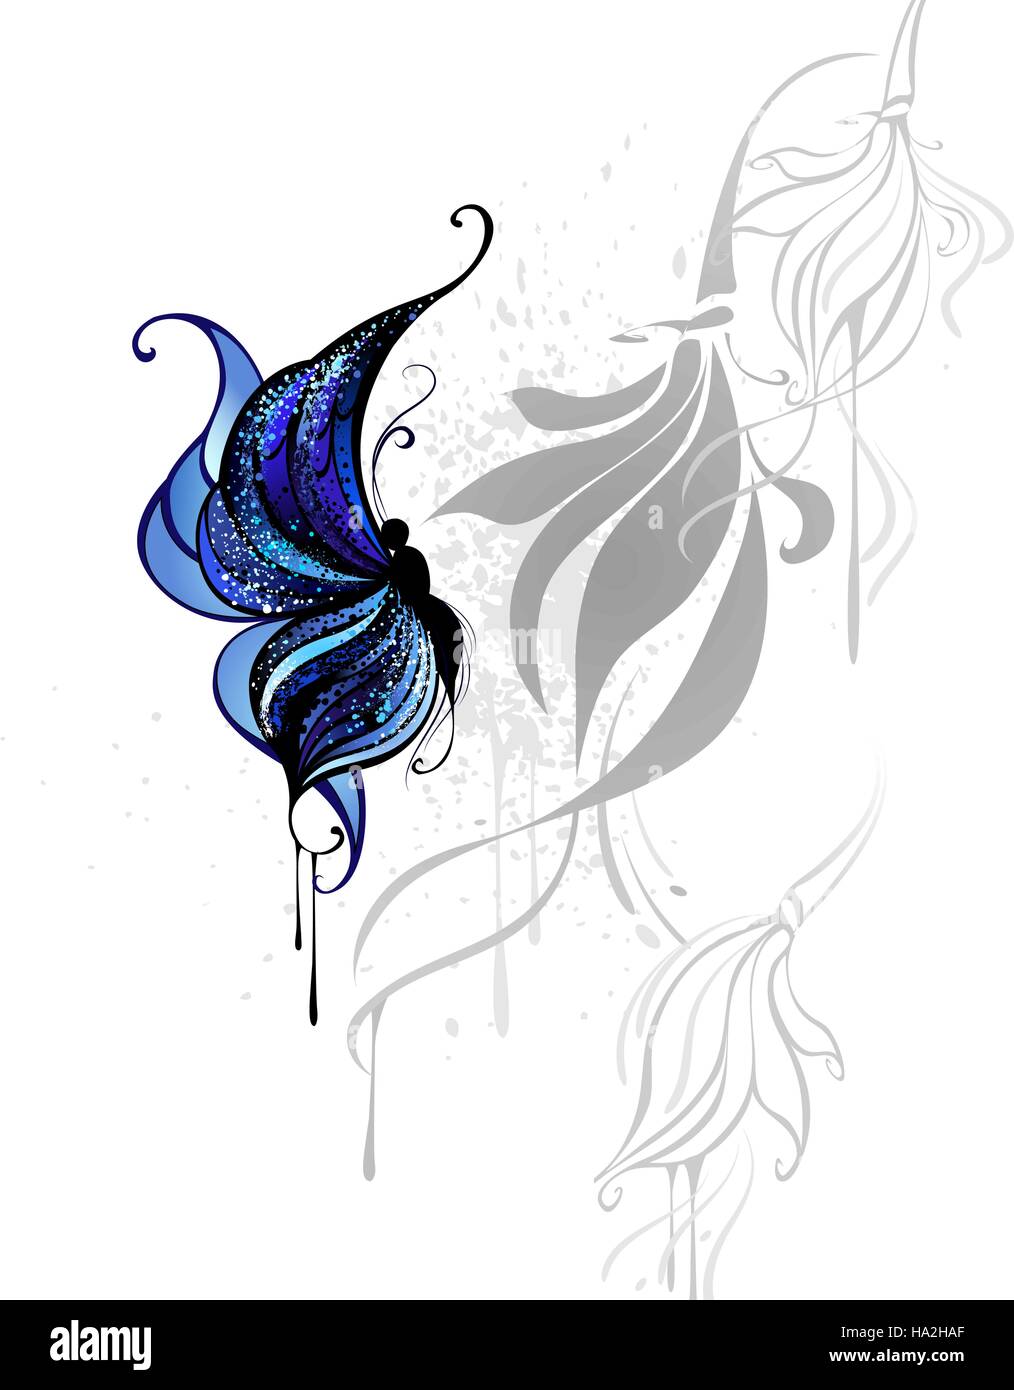 Dessiné avec papillon bleu foncé et la peinture noire sur un fond blanc avec le gris fleurs stylisées. Illustration de Vecteur